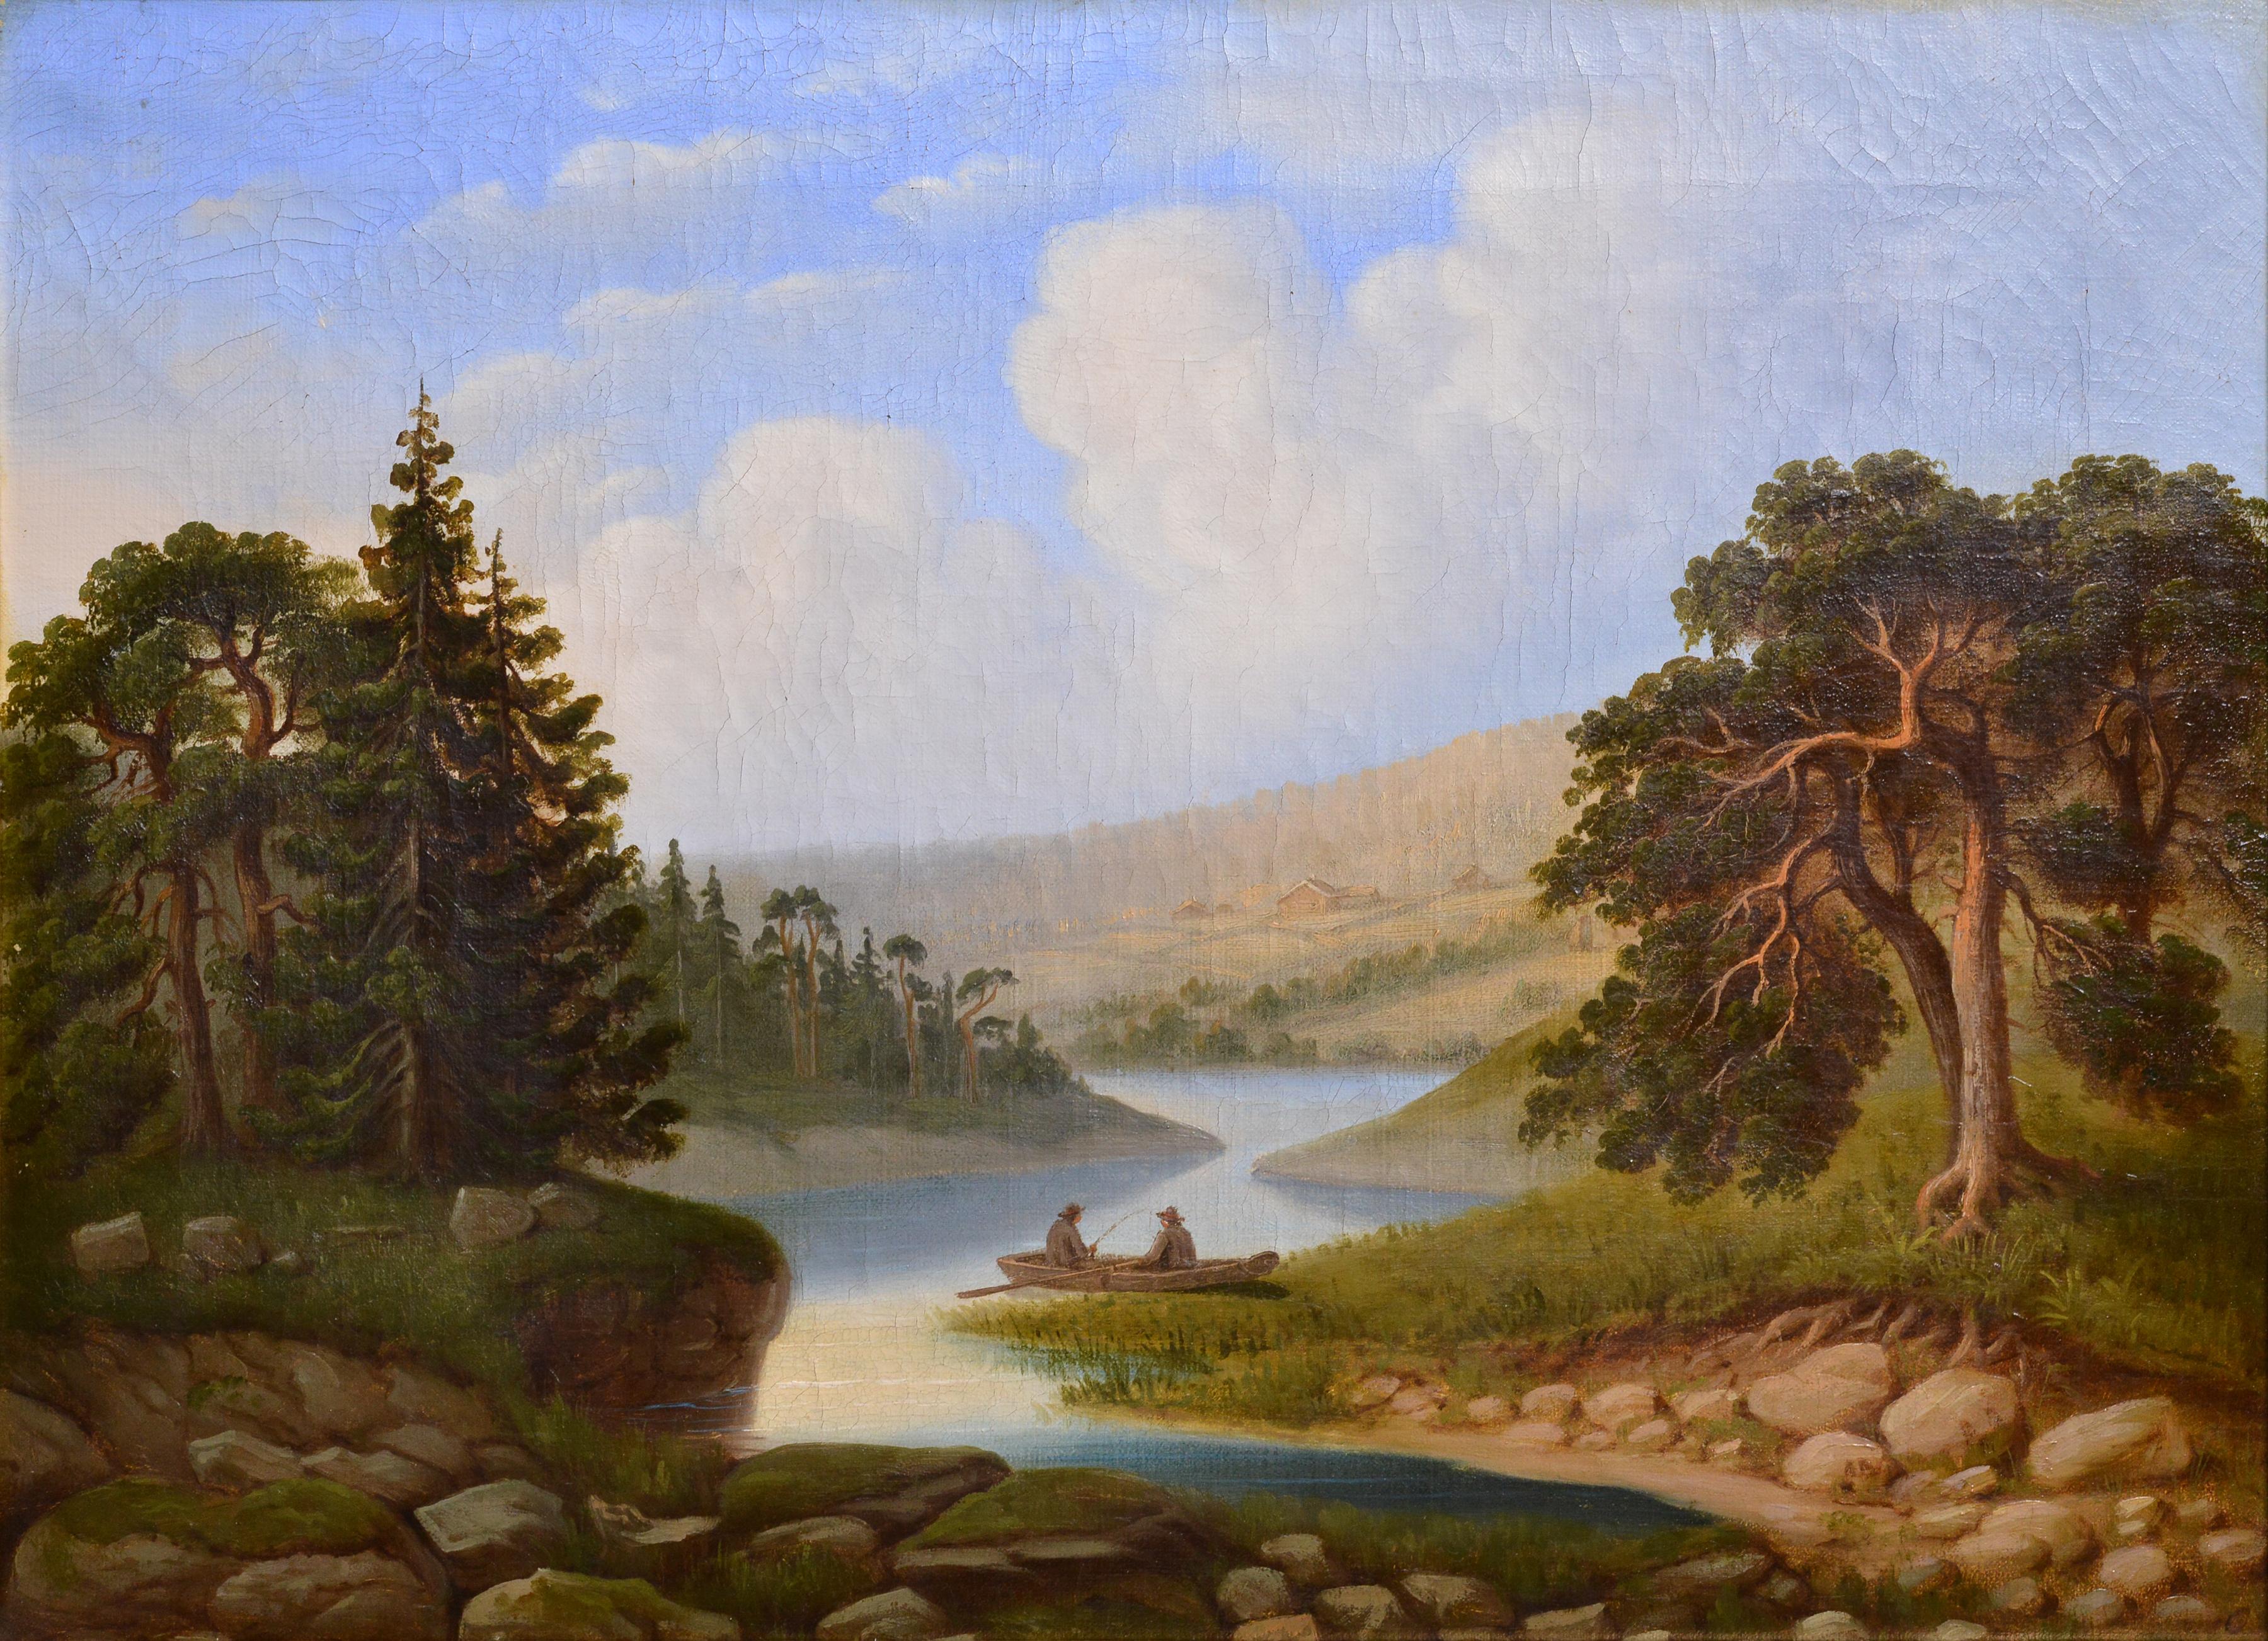 Fischer auf Fluss Idyllic Skandinavische Landschaft 19. Jahrhundert Ölgemälde – Painting von Unknown